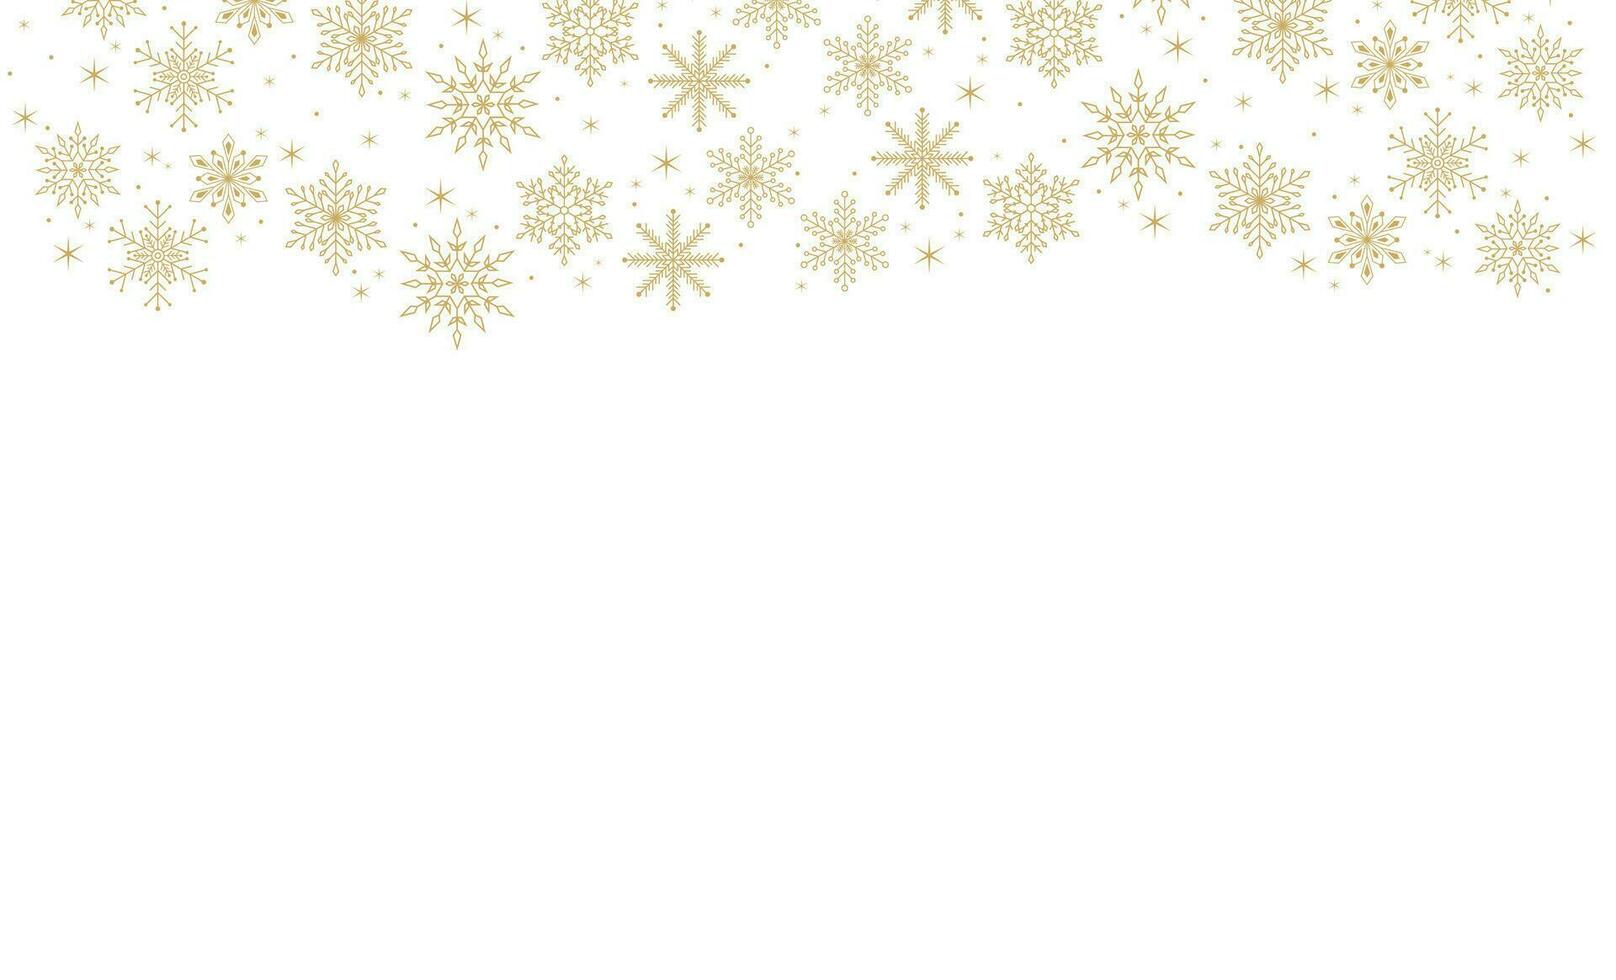 Kerstmis achtergrond met sneeuwvlokken, banier, kaart. vector illustratie